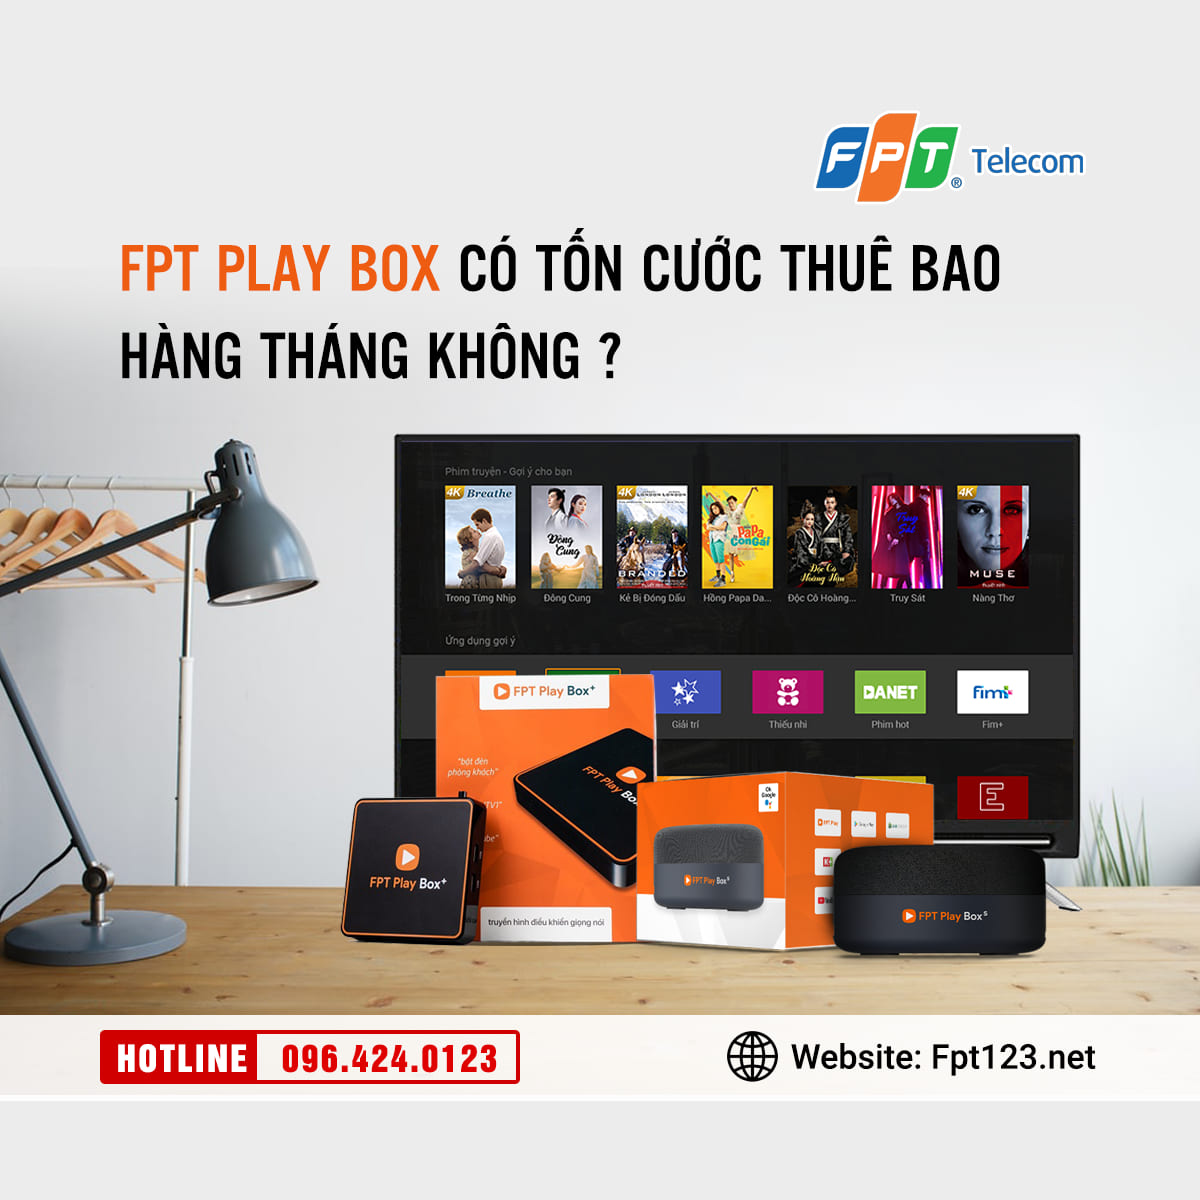 FPT Play Box có tốn cước thuê bao hàng tháng không?